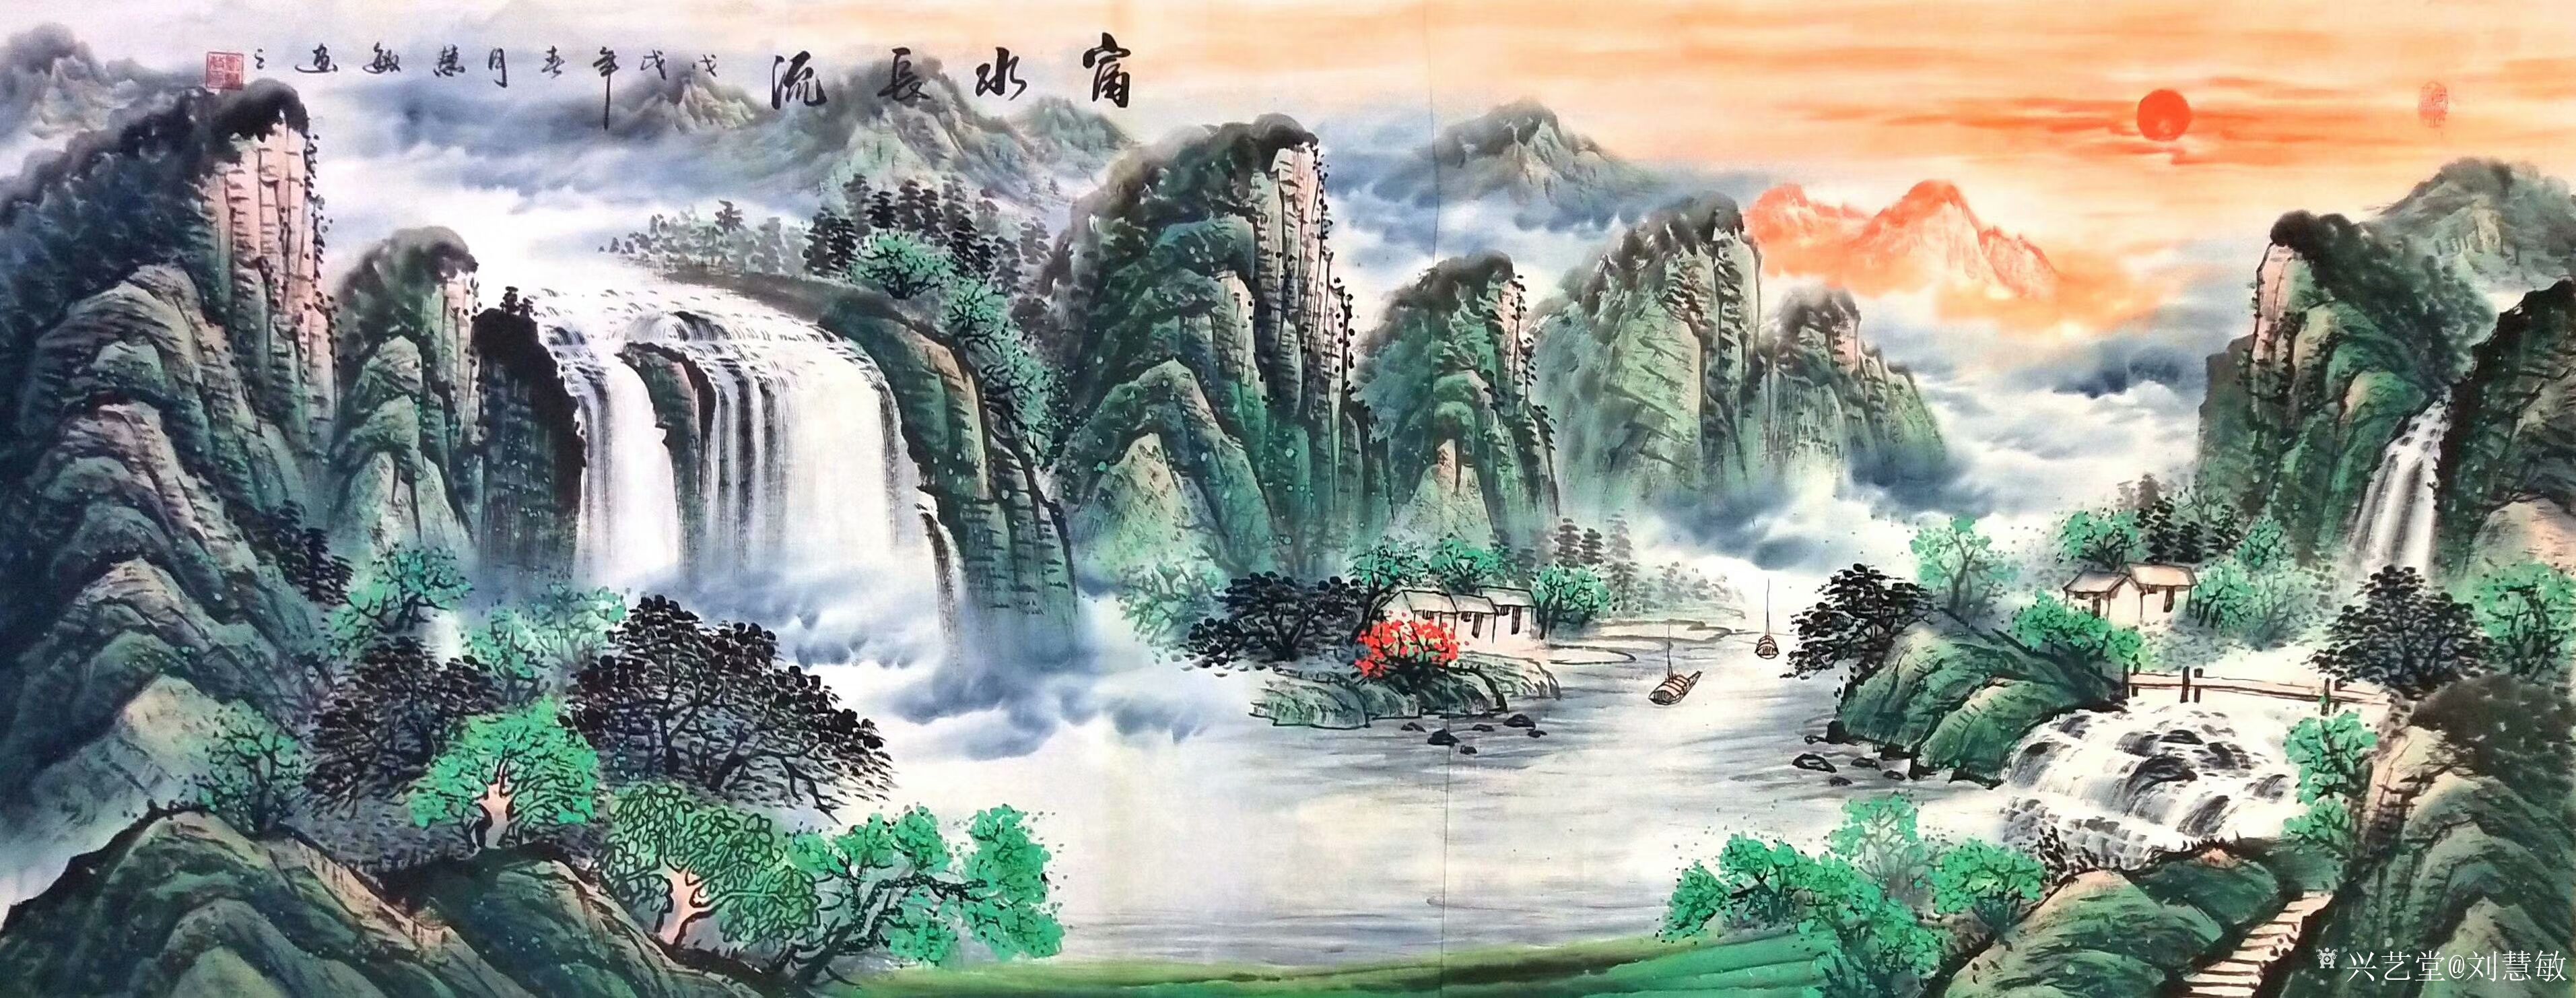 刘慧敏日记-晒一组绿水青山版的国画山水画《源远流长》,风格近似